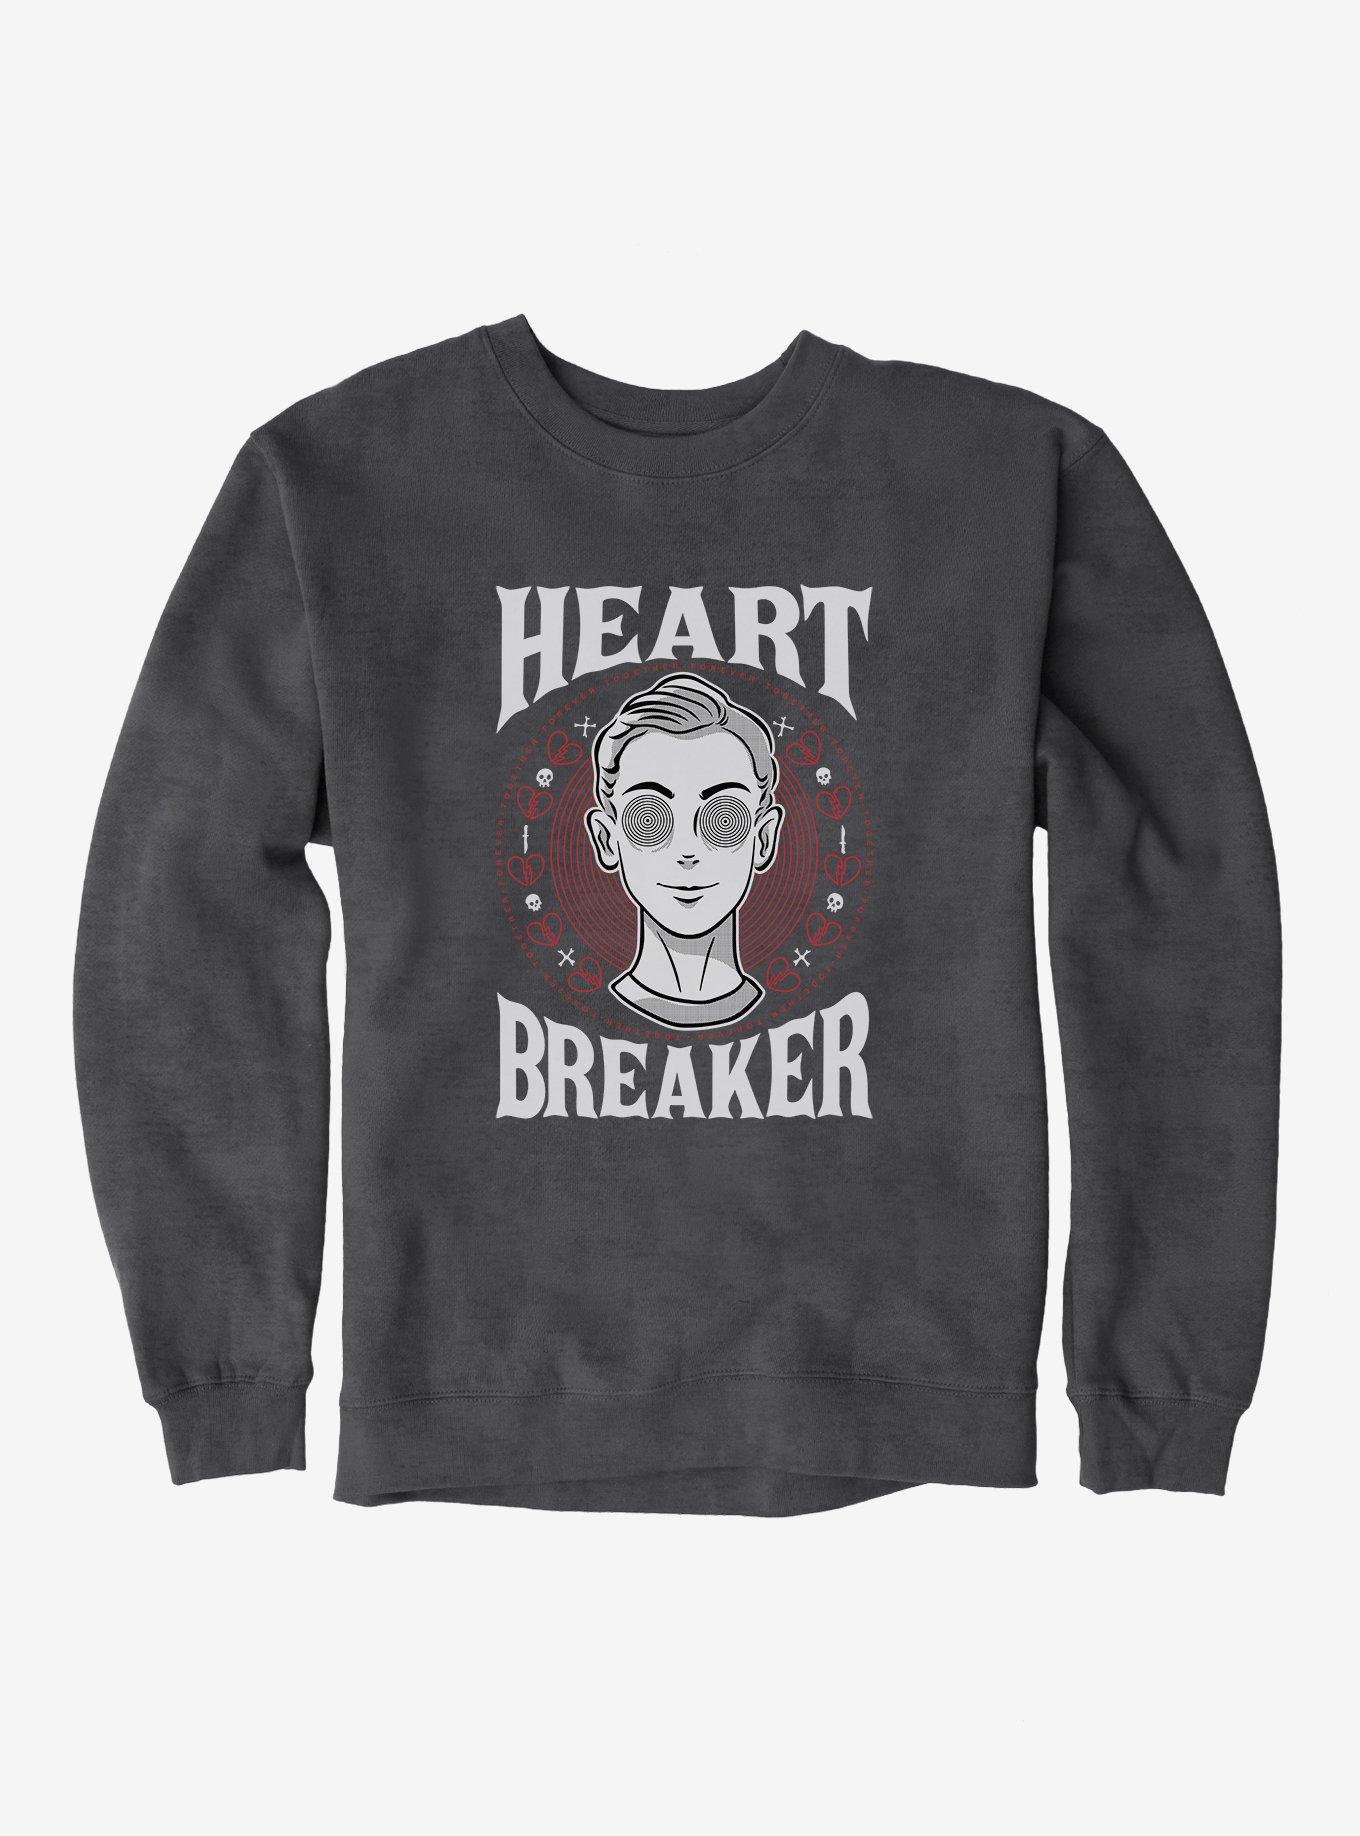 Heart Breaker Boy Sweatshirt